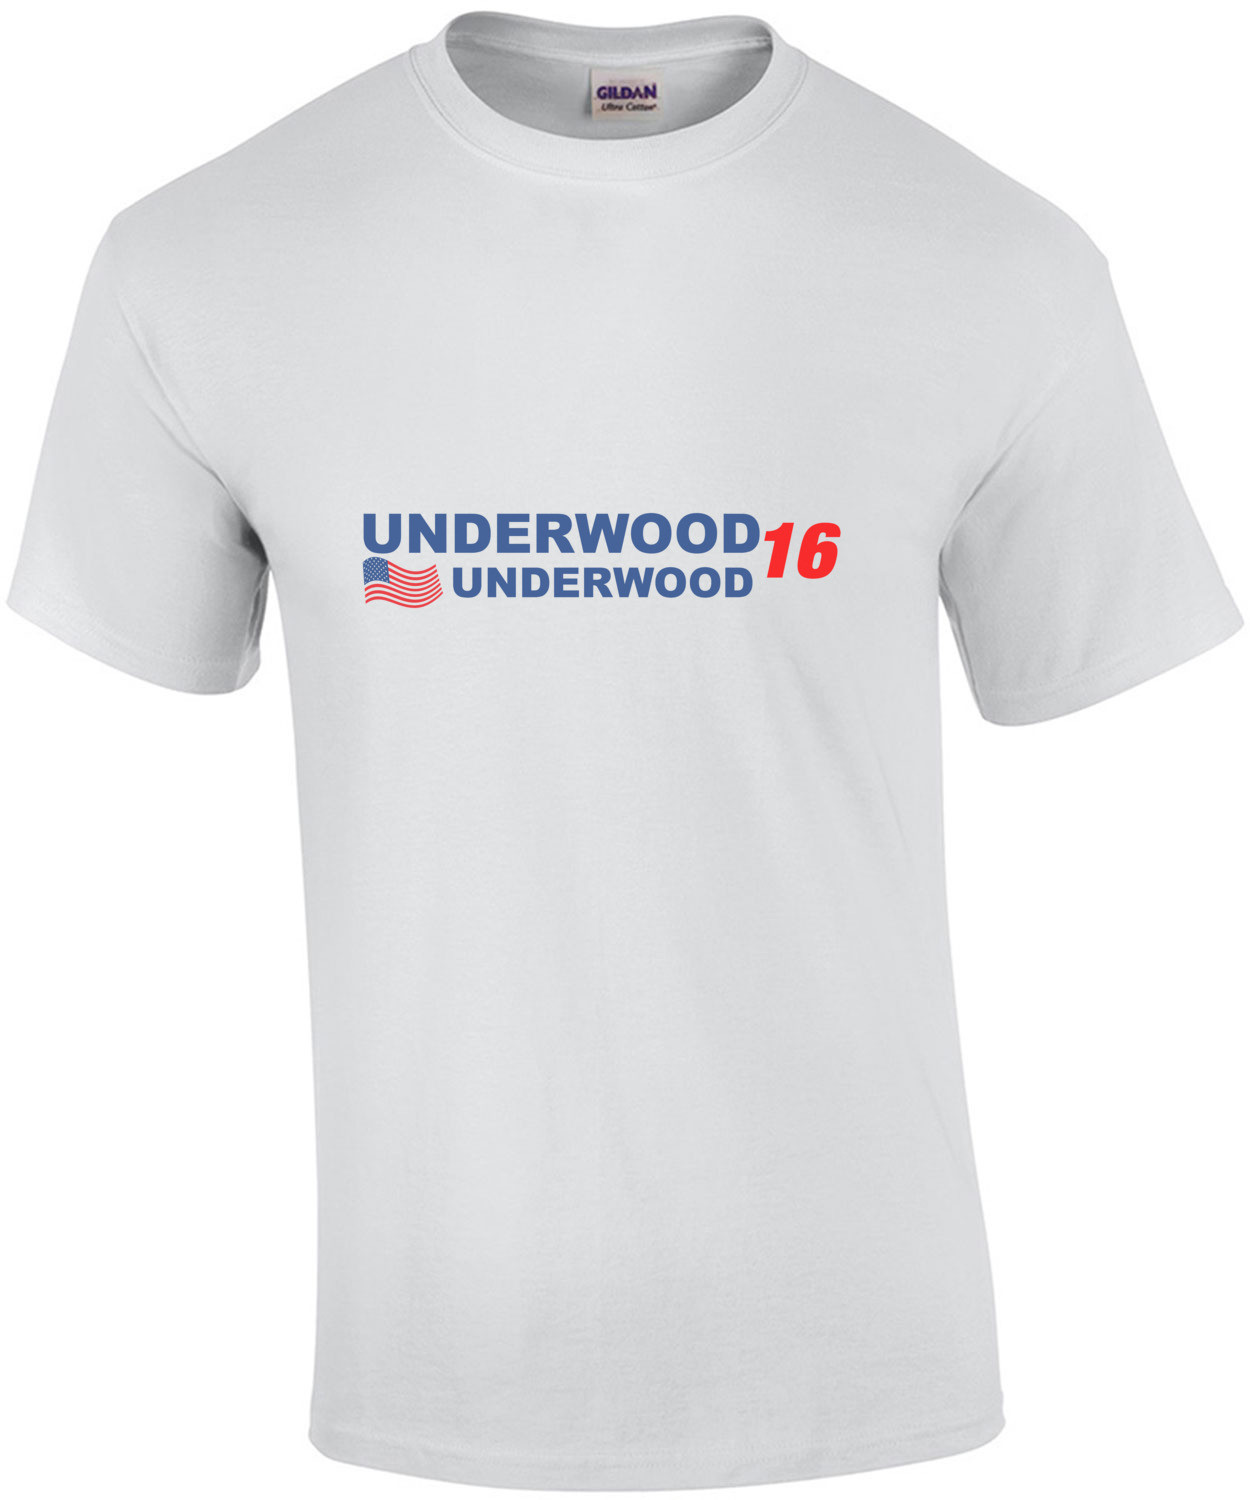 Underwood Underwood 2016 - House of Cards